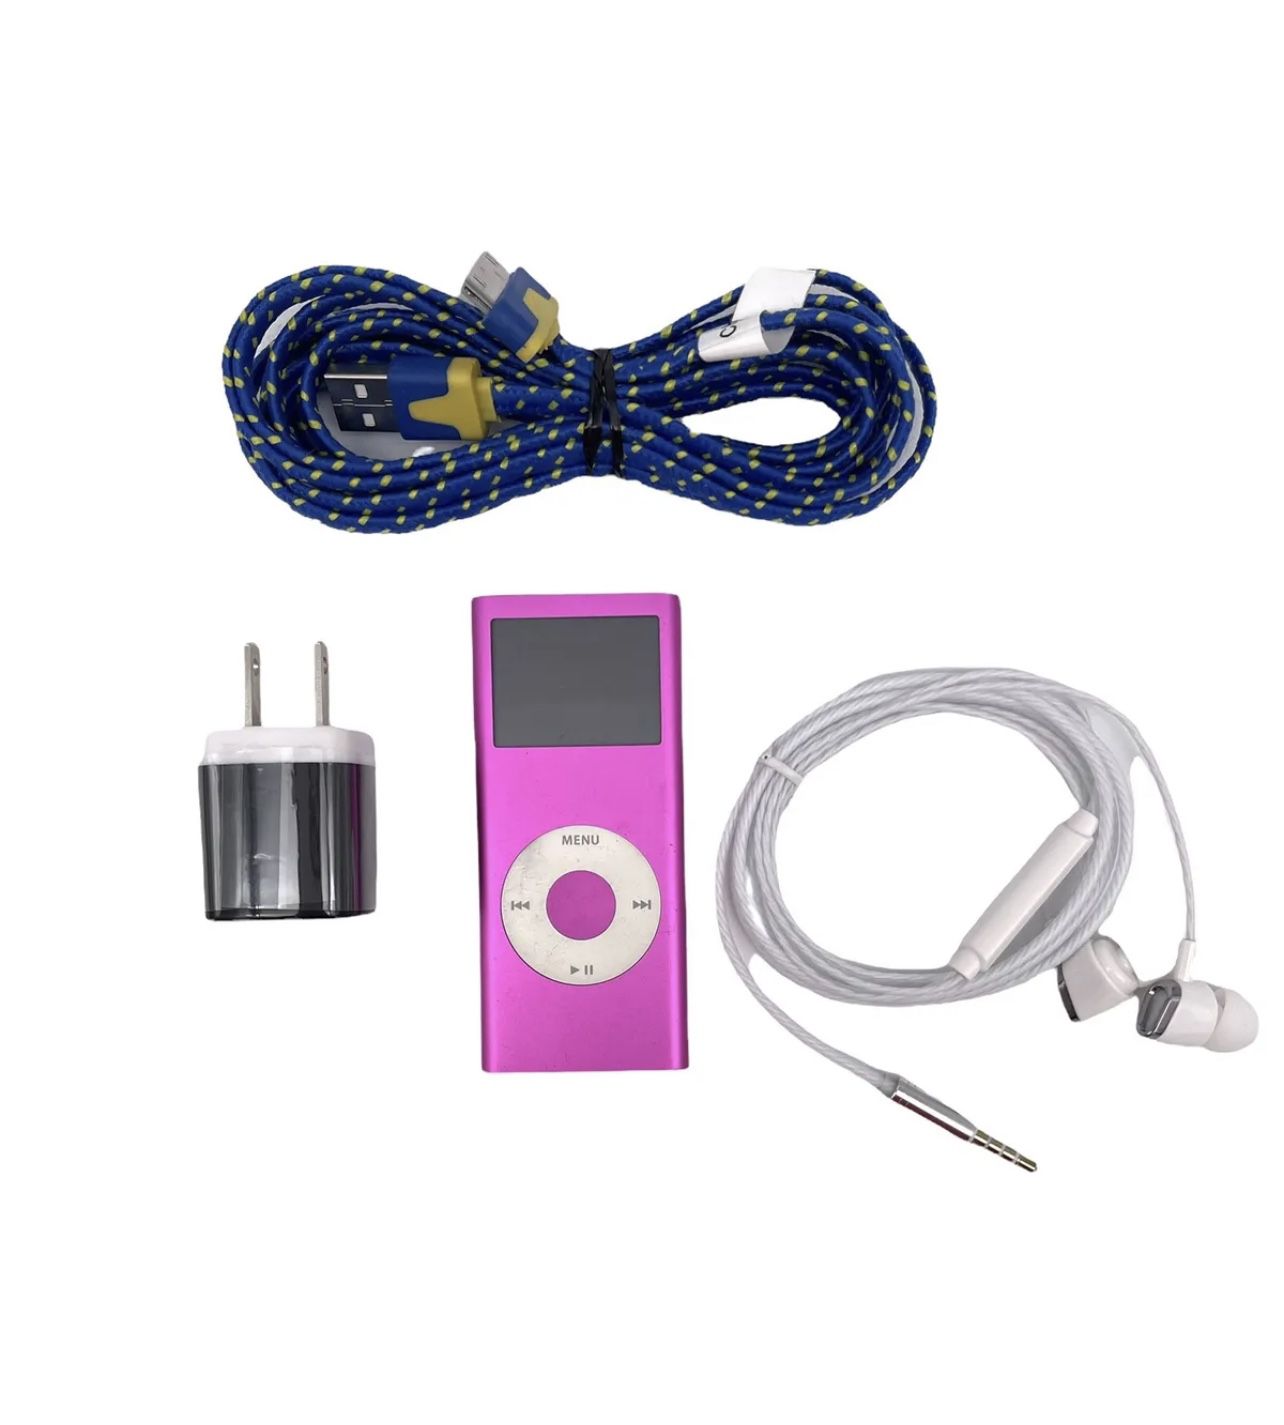 Apple iPod Nano 2nd Generation 4GB Pink A1199 MA489LL/A MP3 Player Bundle